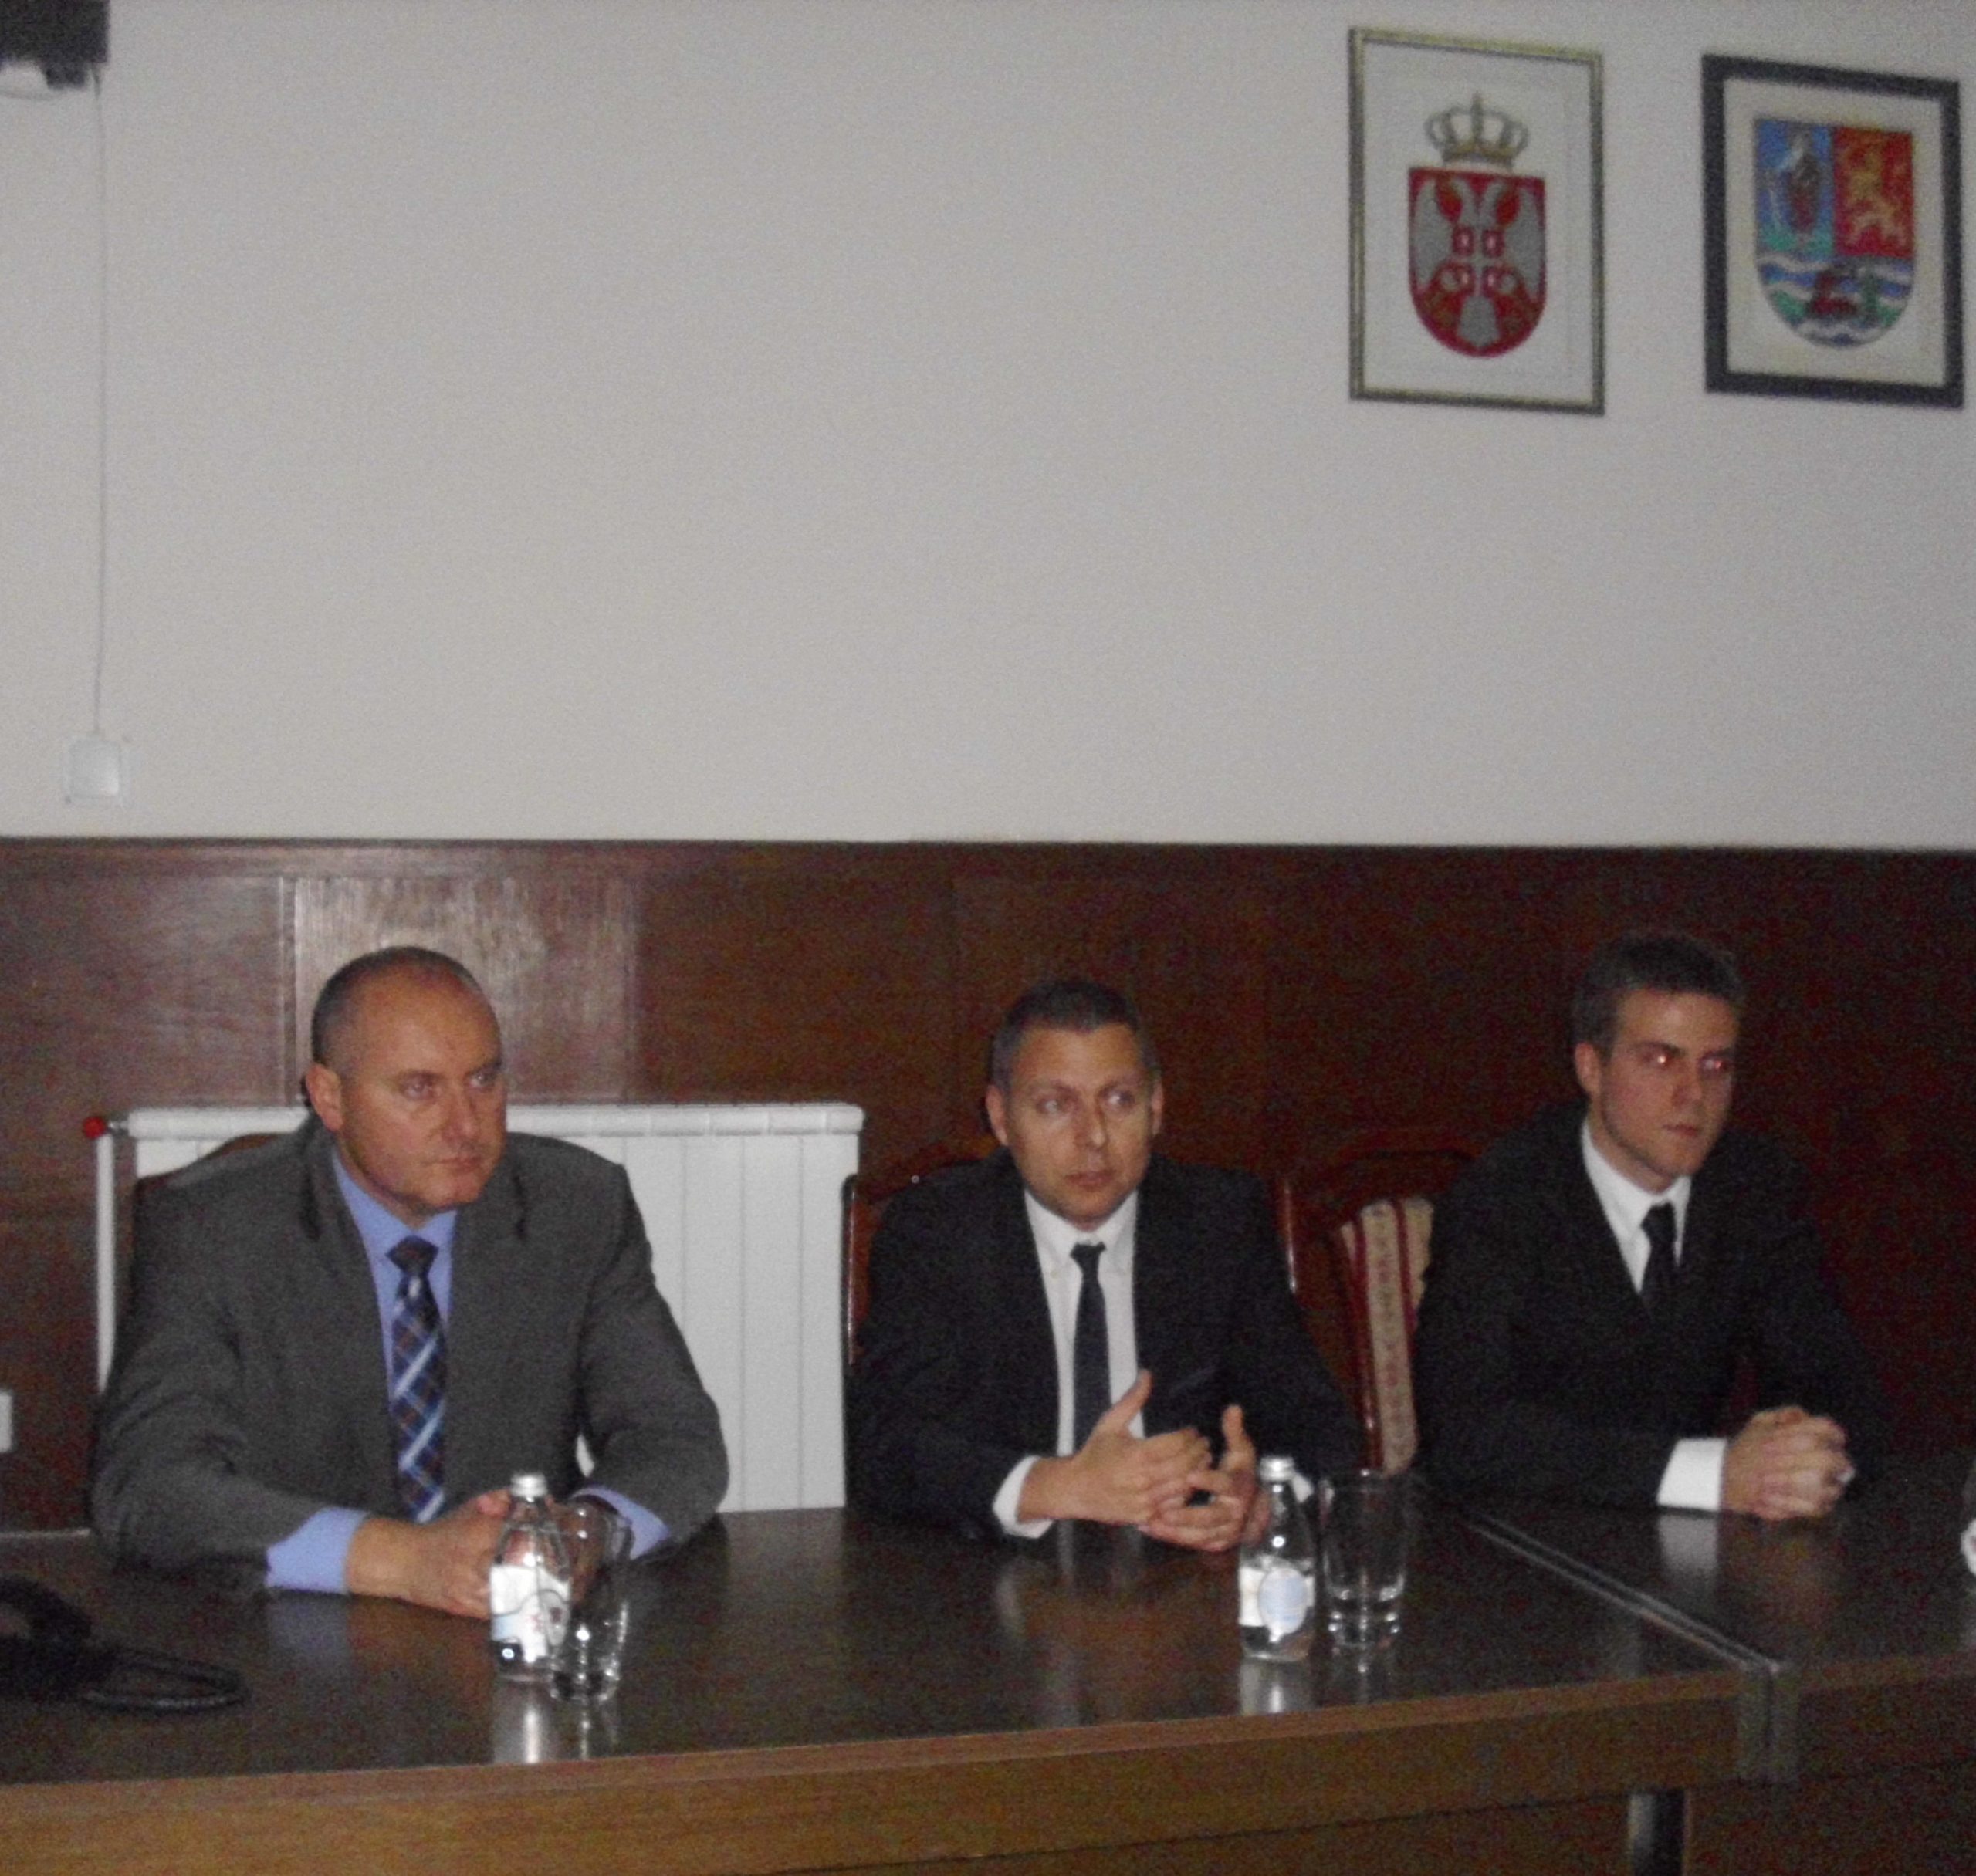 Миливој Вребалов са полазницима програма „Примењена дипломатија 2013/2014, Нови Сад“, у Скупштини АПВ